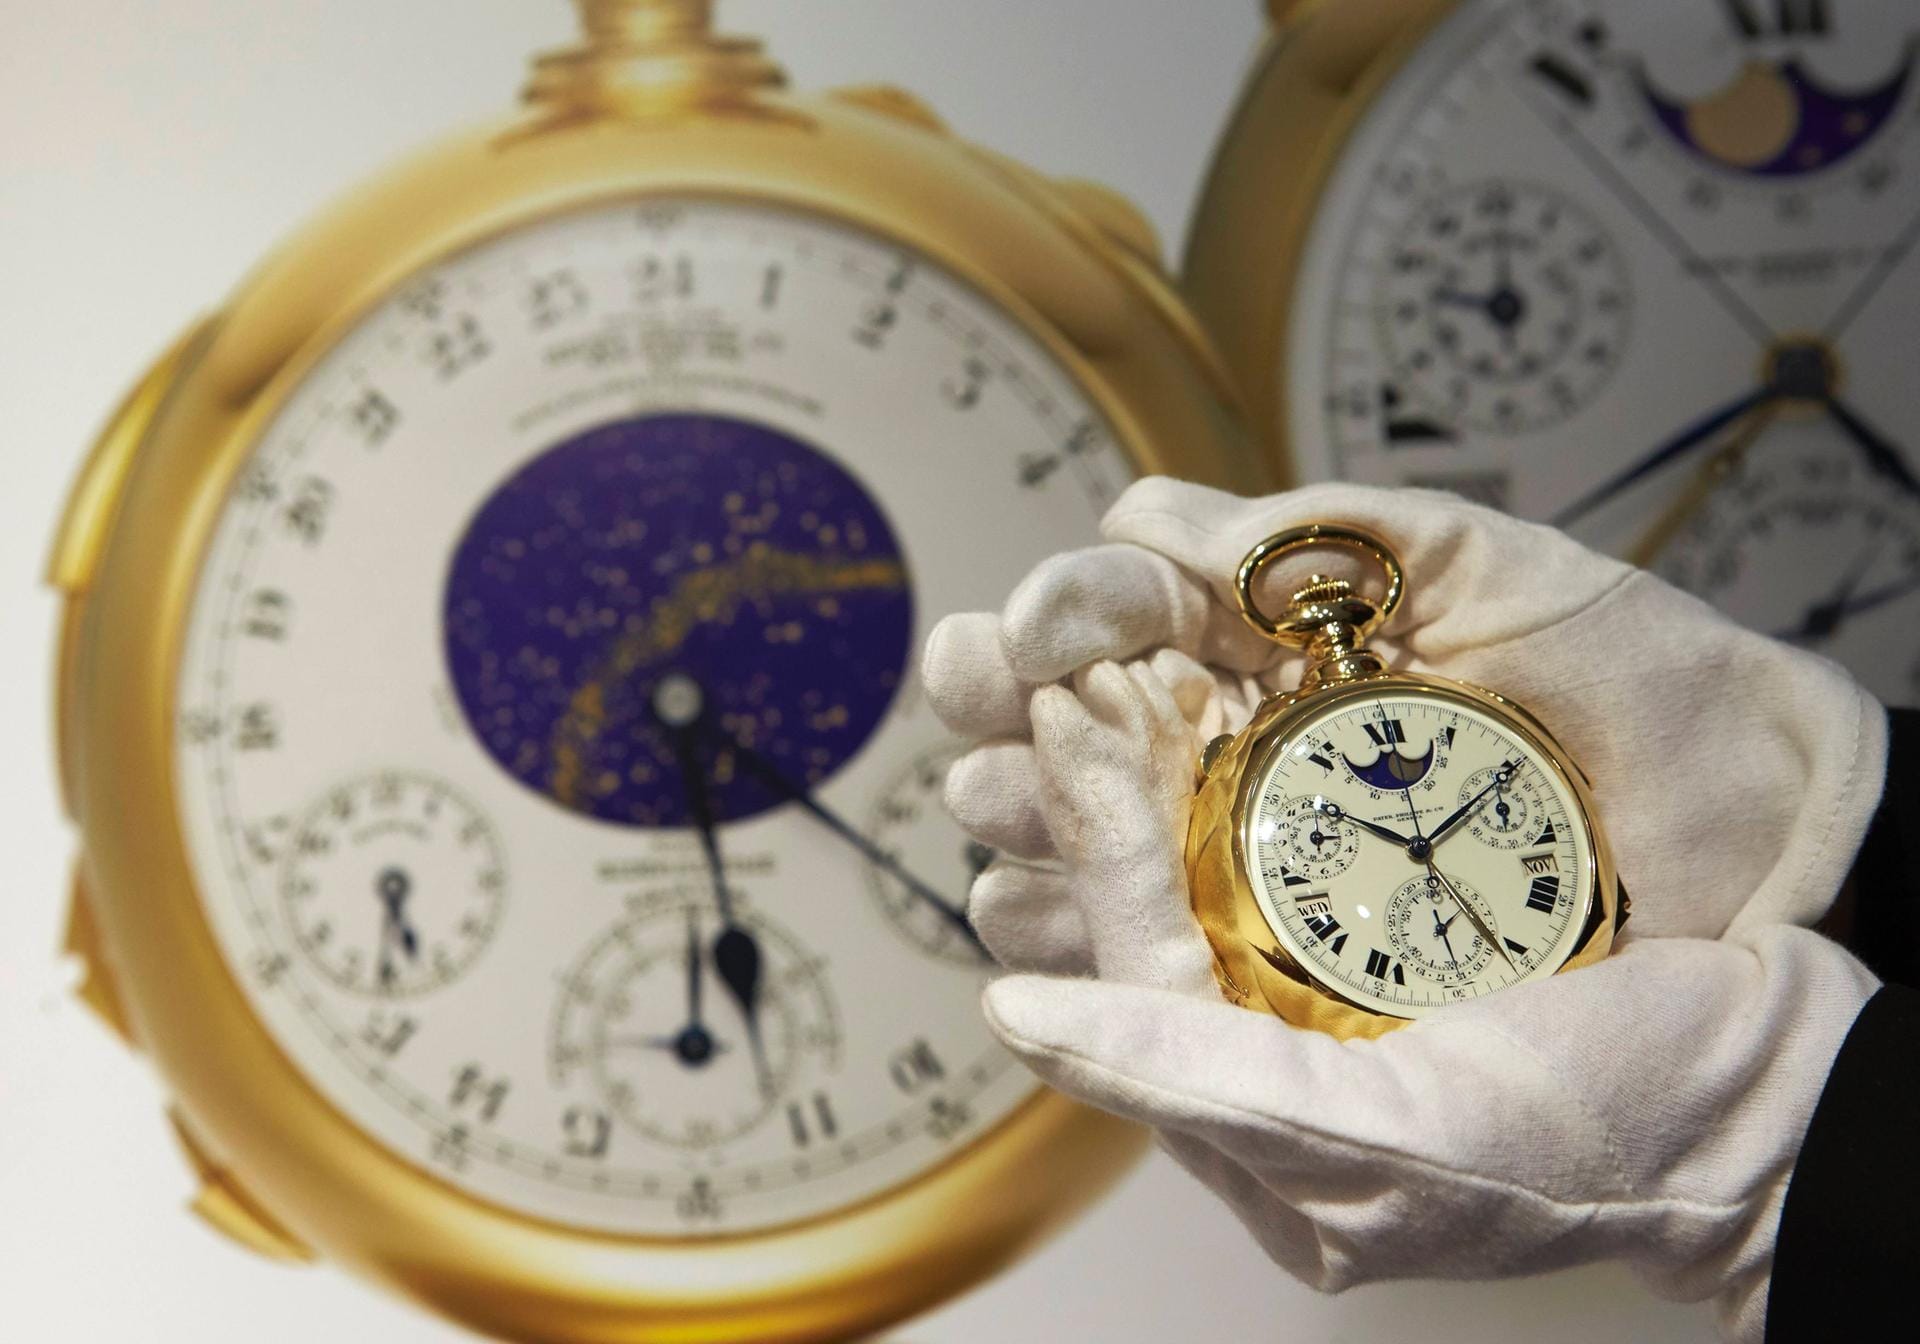 Die Schweizer bauten die Taschenuhr in den 30er Jahren für den US-Millionär Henry Graves. Acht Jahre brauchte es für die Entwicklung und Produktion der Uhr, bis sie schließlich 1933 ausgeliefert wurde. 24 Komplikationen bietet das Modell.